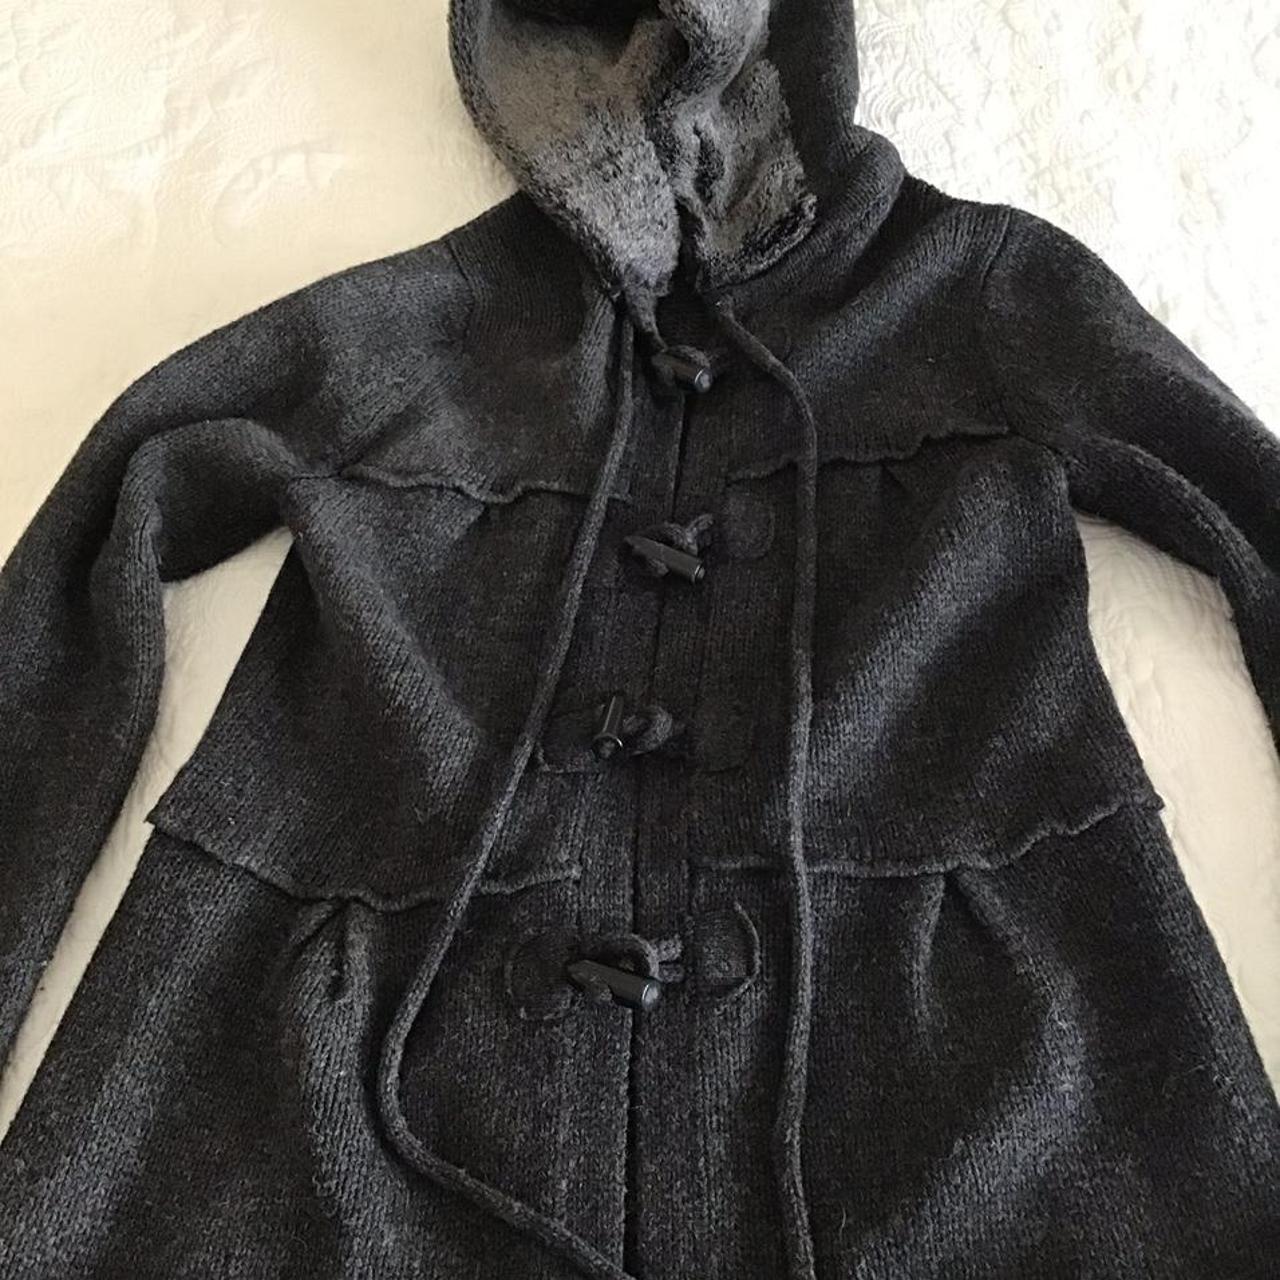 DecJuba grey duffle coat style hooded woollen... - Depop